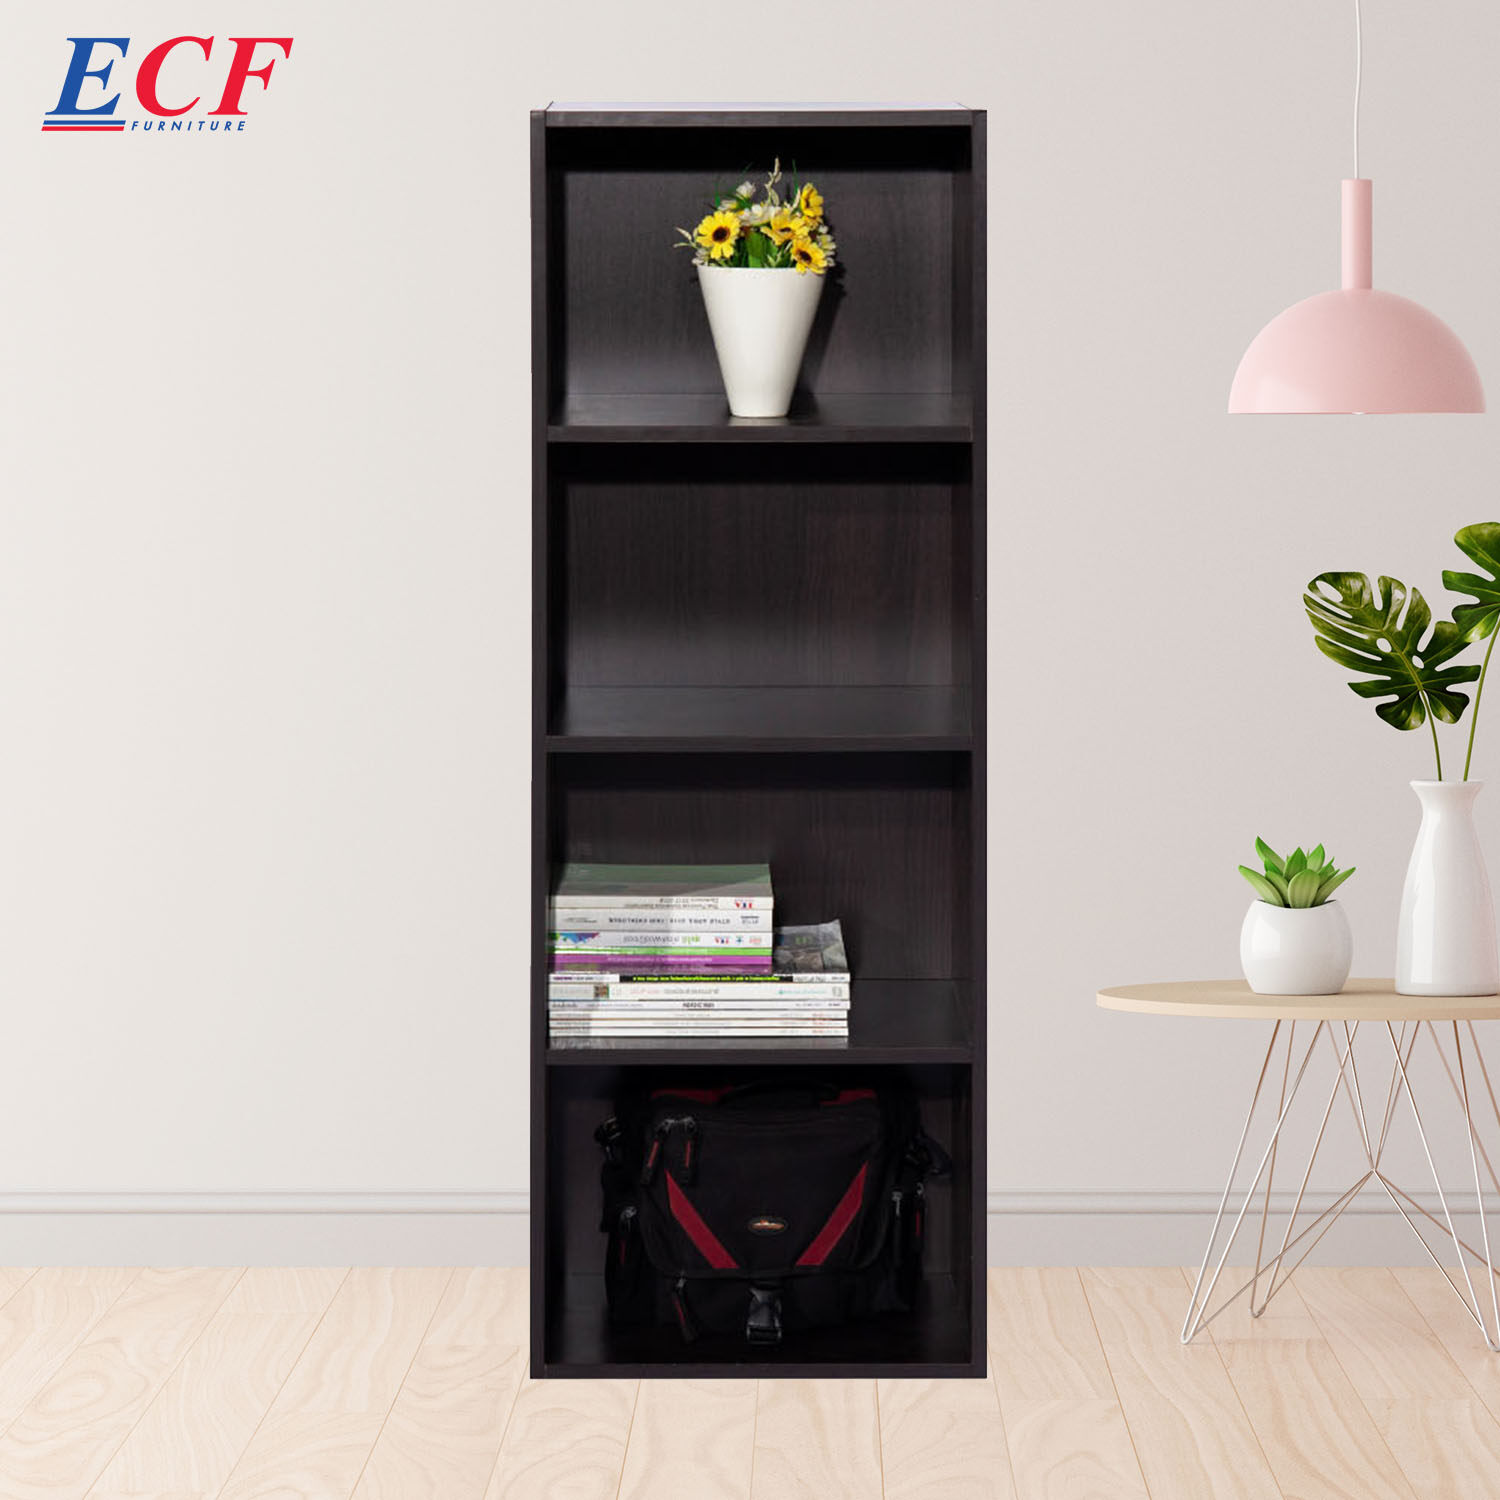 ECF Furniture ชั้นวางอเนกประสงค์ ชั้นวางของ ชั้นวางหนังสือ  ขนาด 4 ช่อง